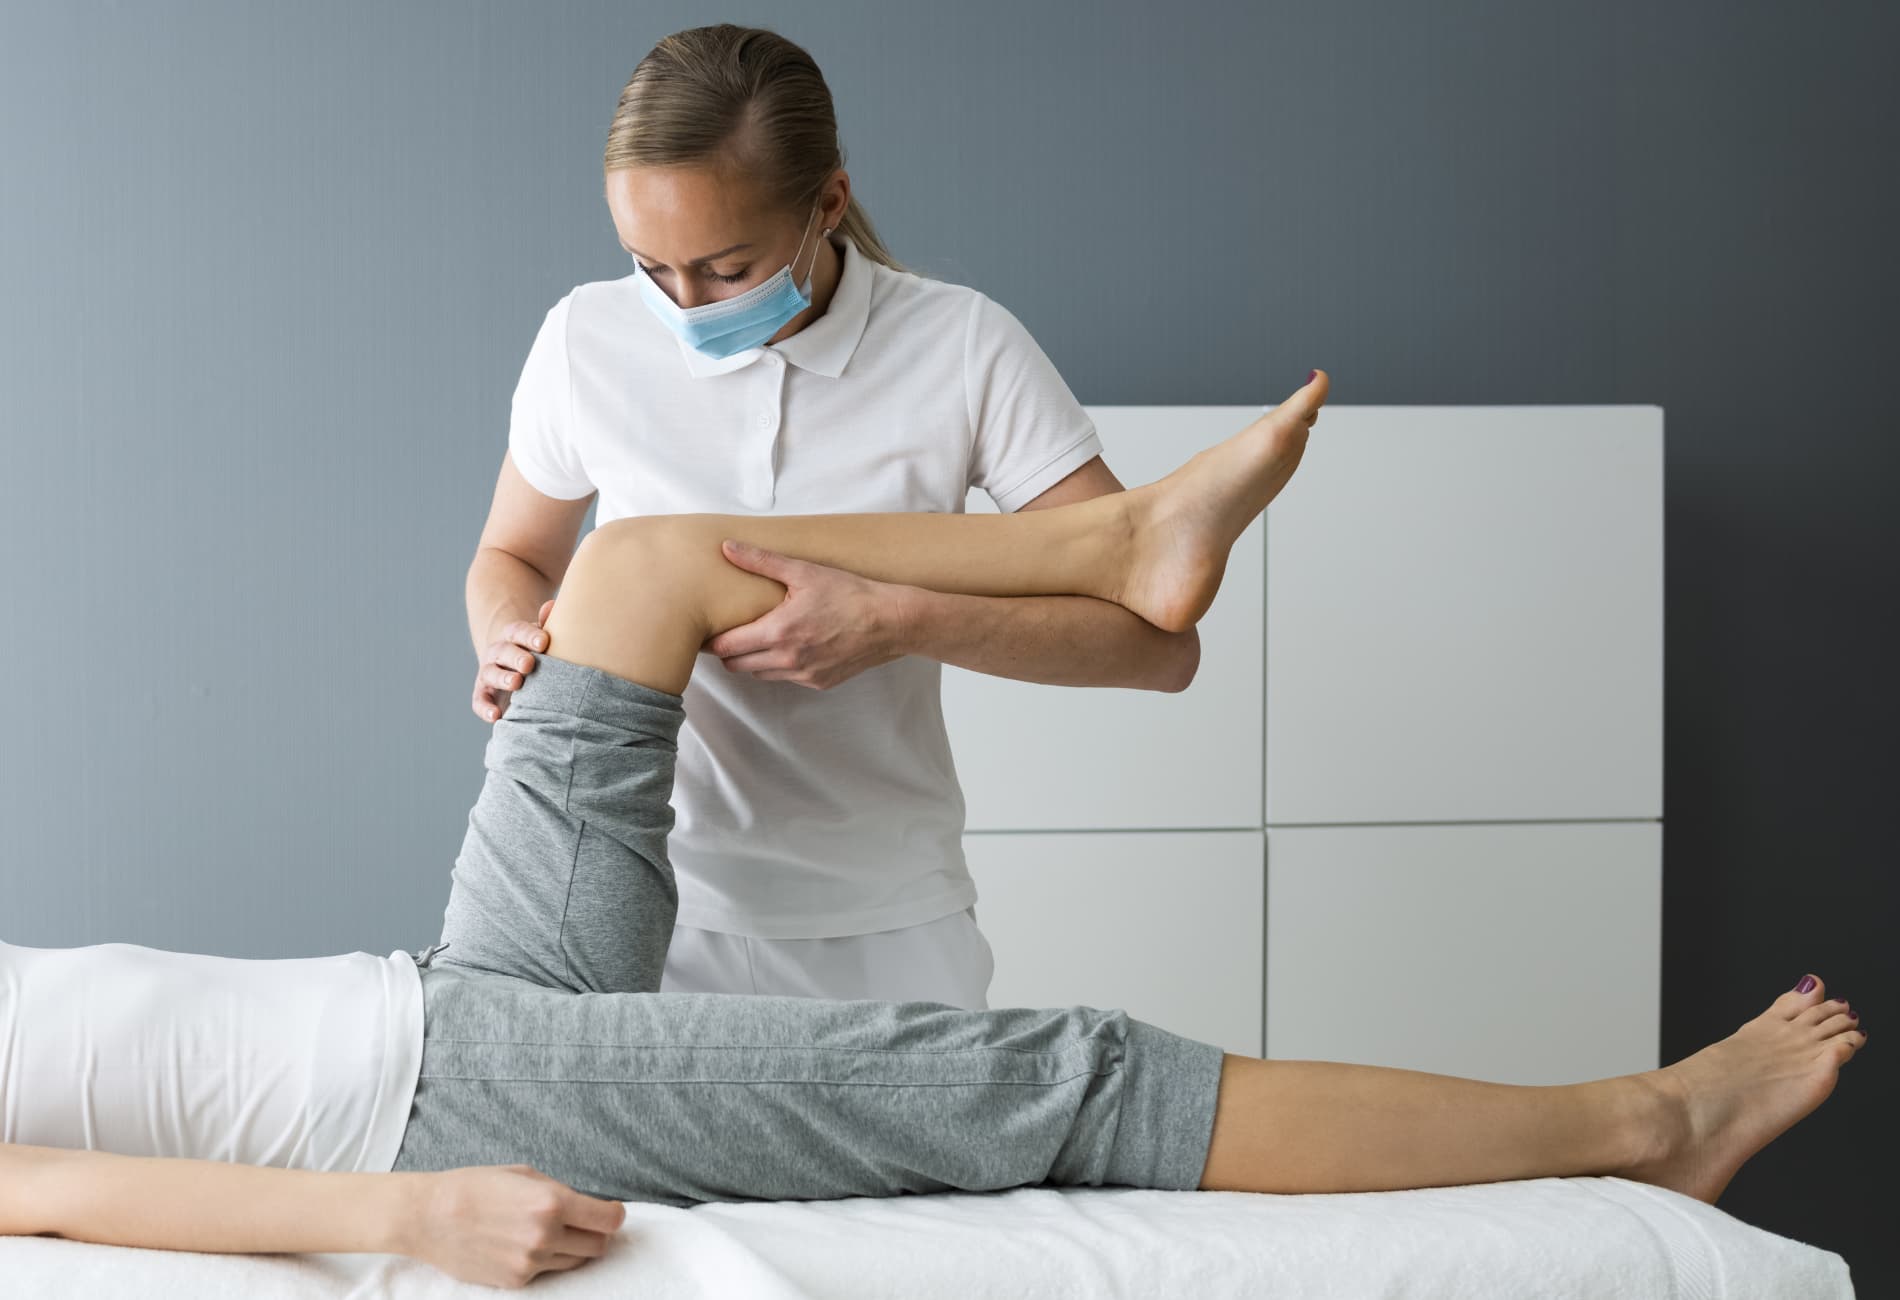 Exercícios específicos podem ajudar a melhorar a flexibilidade e o fortalecimento dos músculos ao redor do joelho, aliviando a pressão na plica.